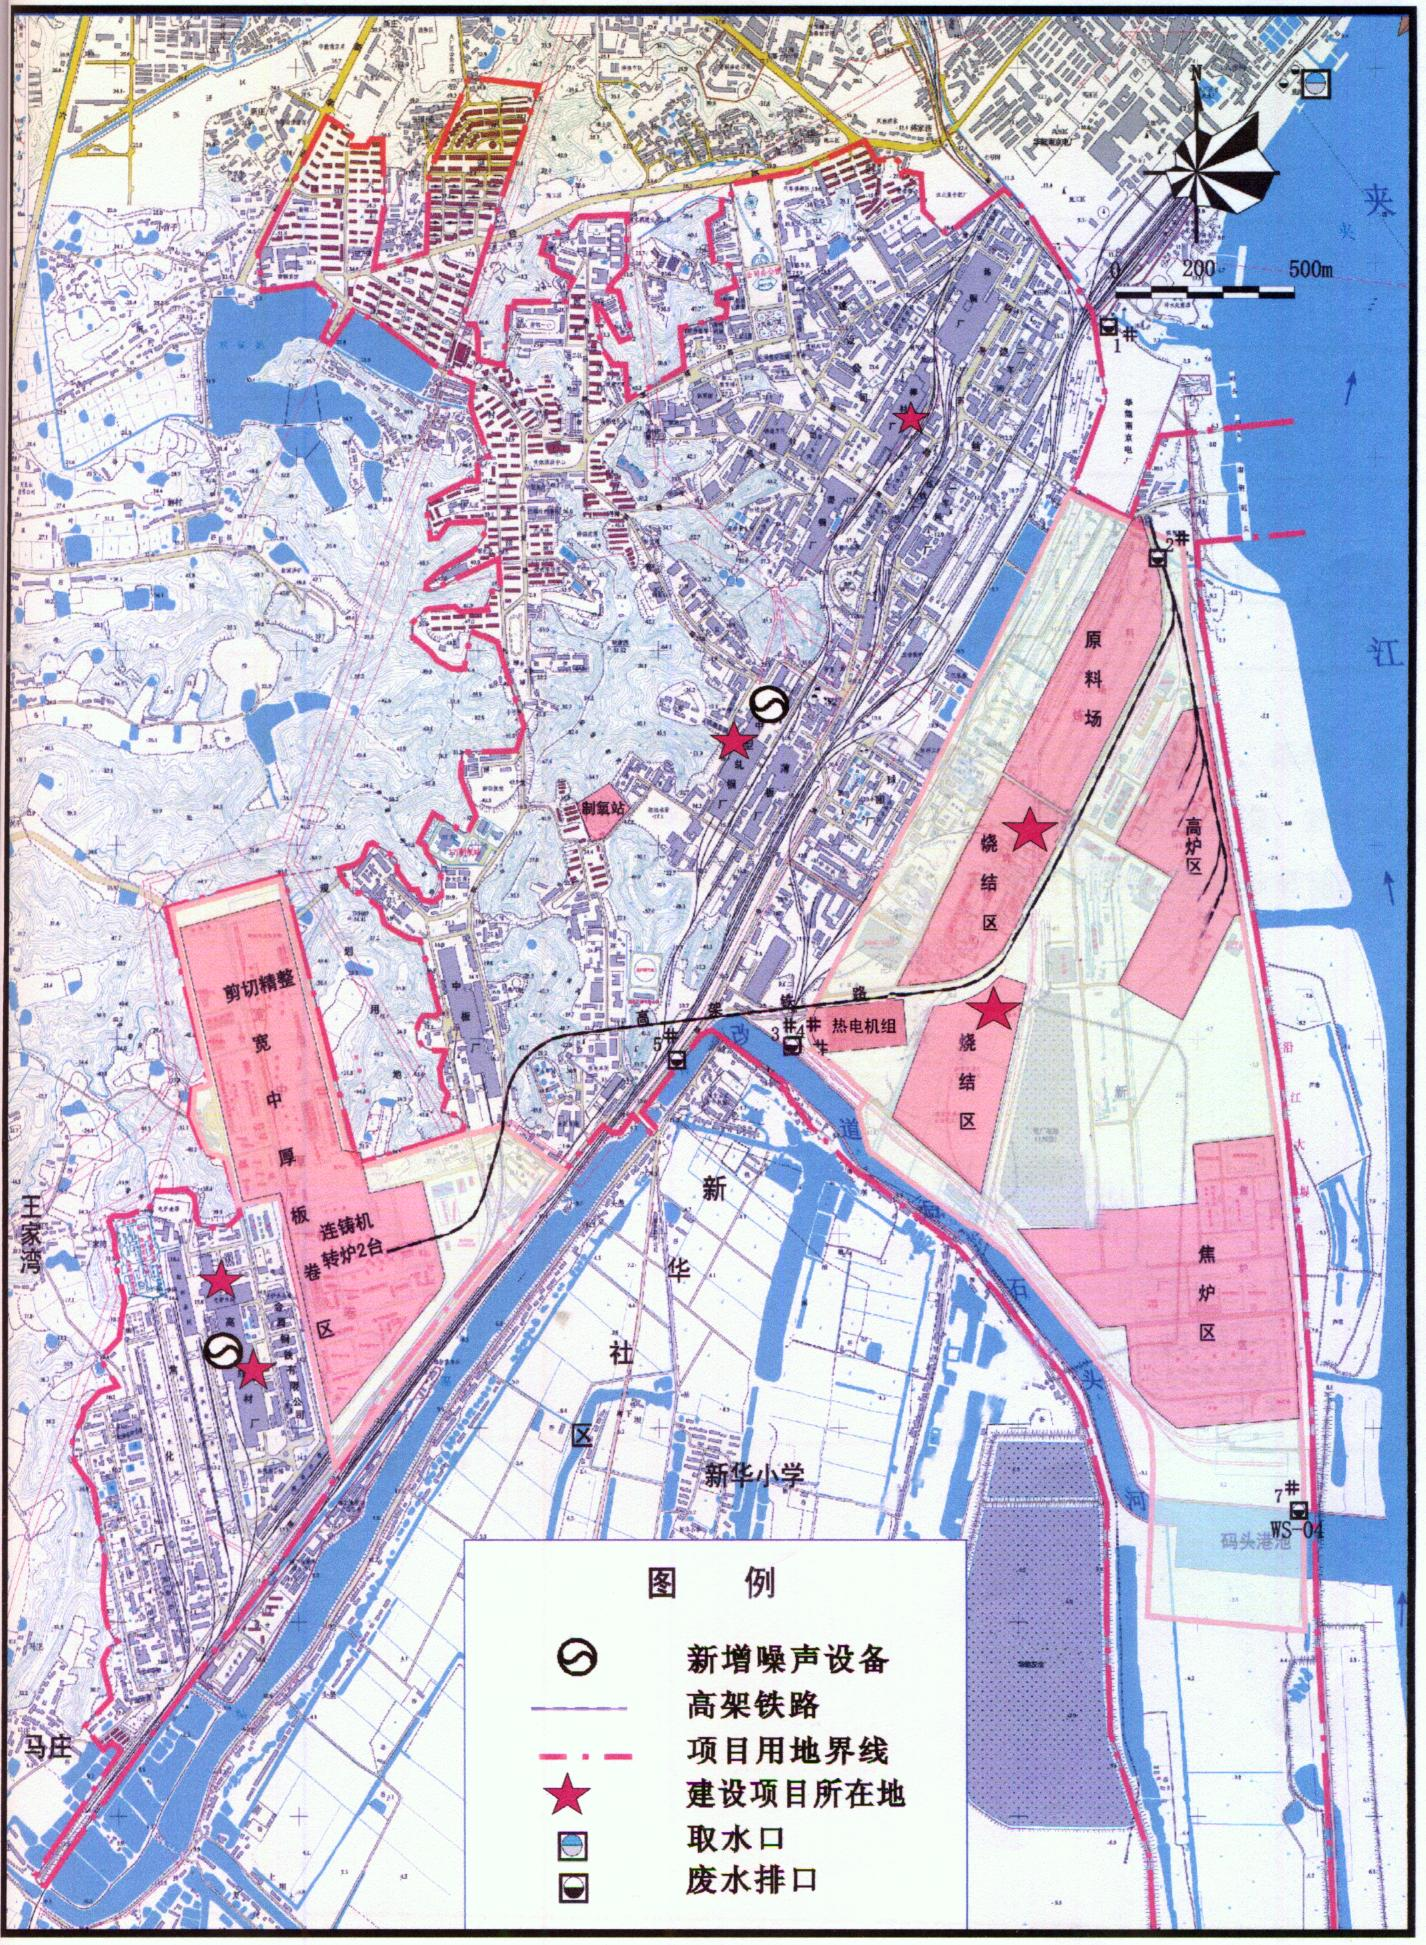 南京钢铁联合有限公司综合节能技术改造项目竣工环境保护验收监测报告